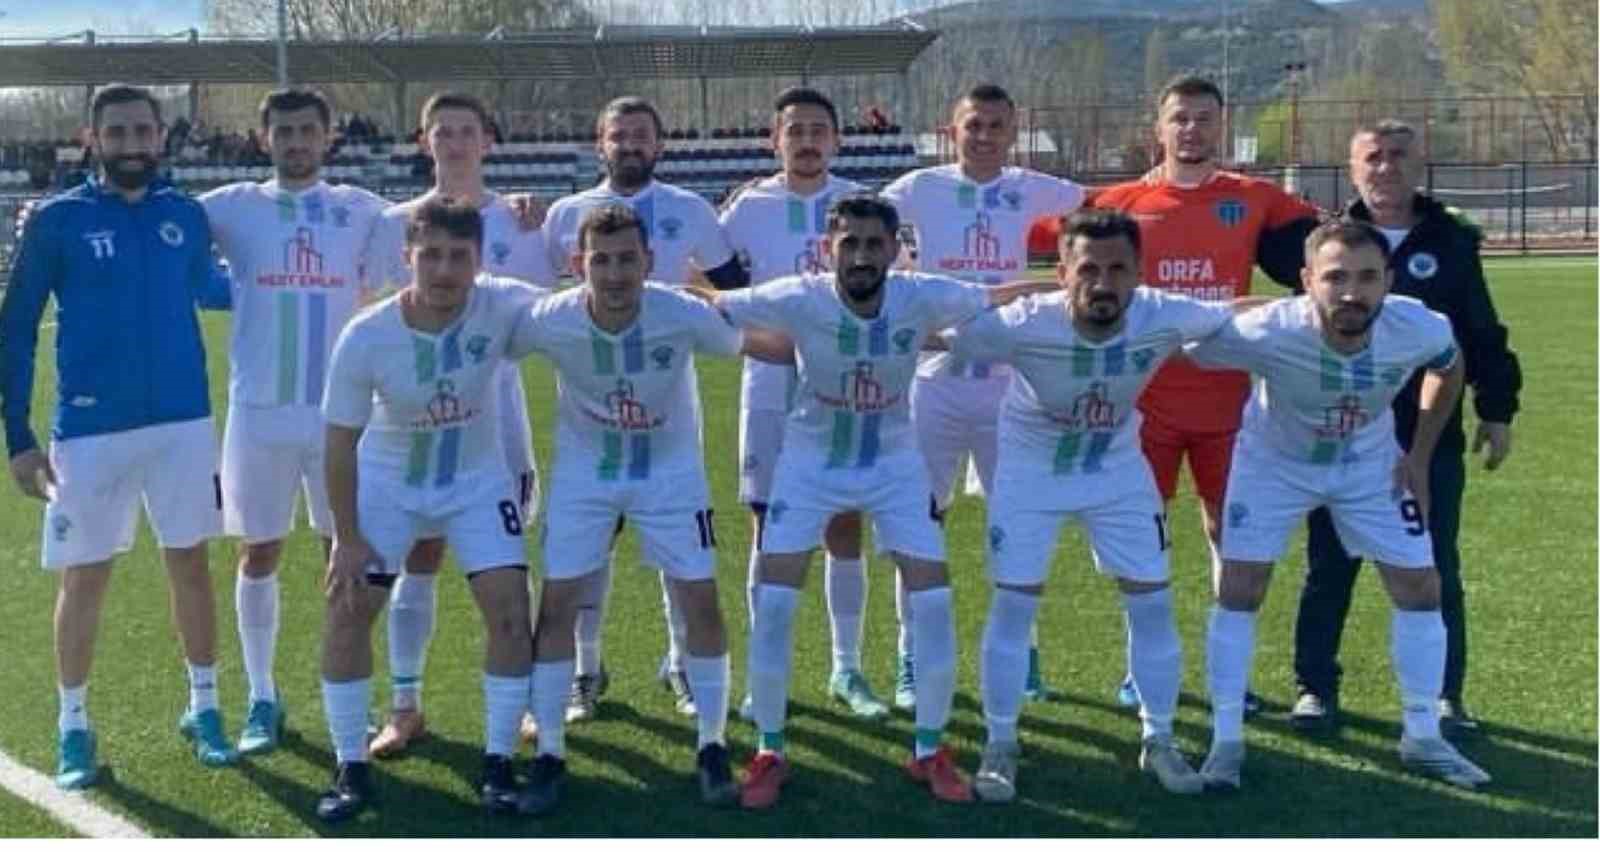 Osmaneli Gençlerbilirliği Spor Kulübü ligden çekildi